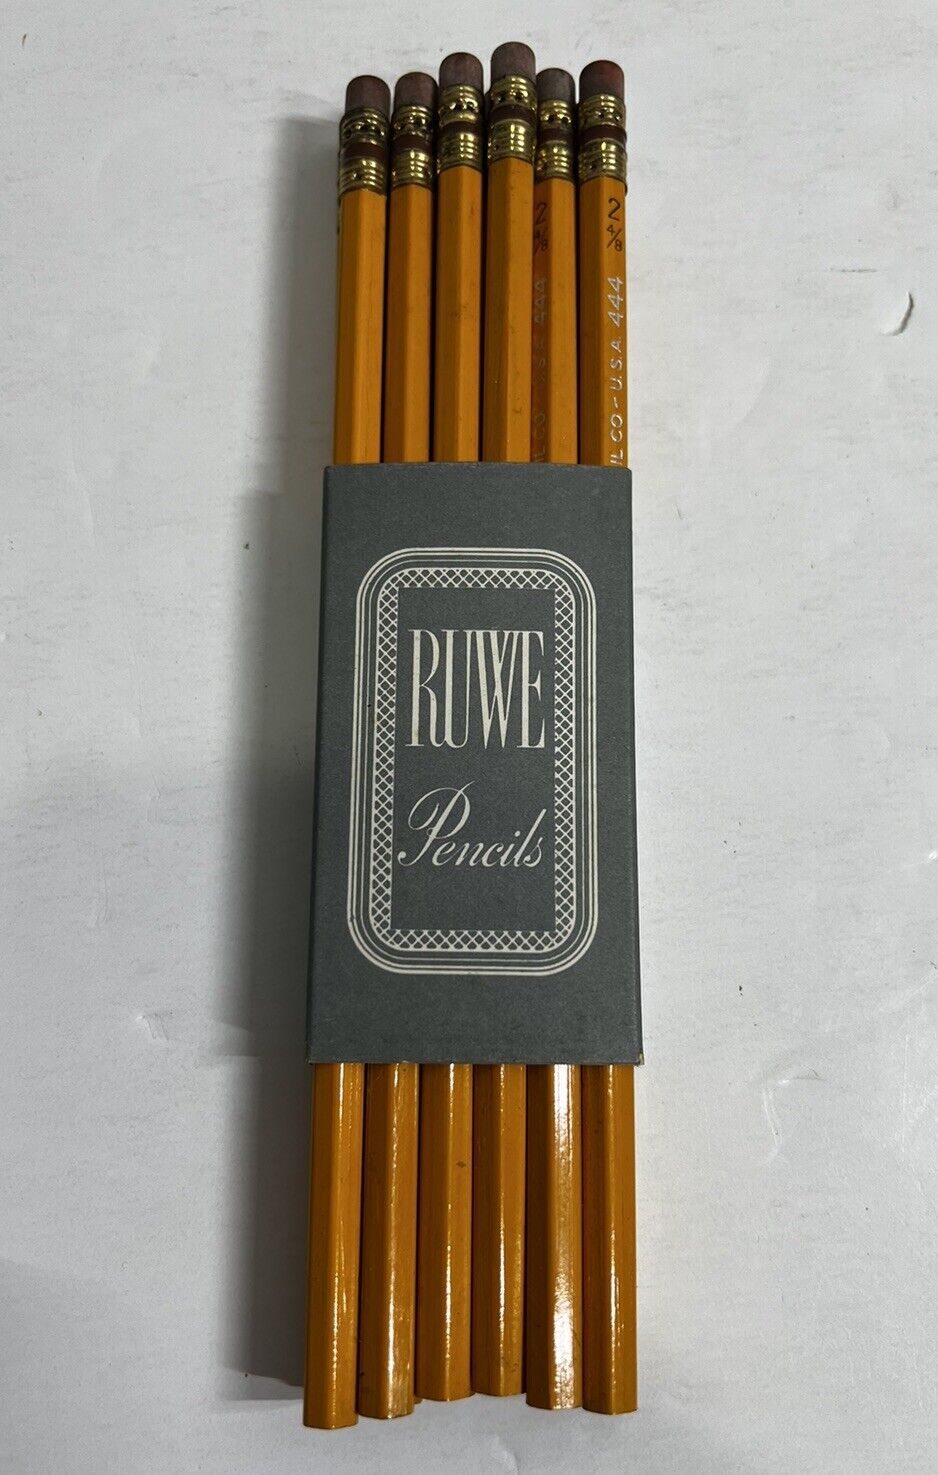 12 Vintage Ruwe 444 Bonded Lead Quiz 2-4/8 Pencils NOS